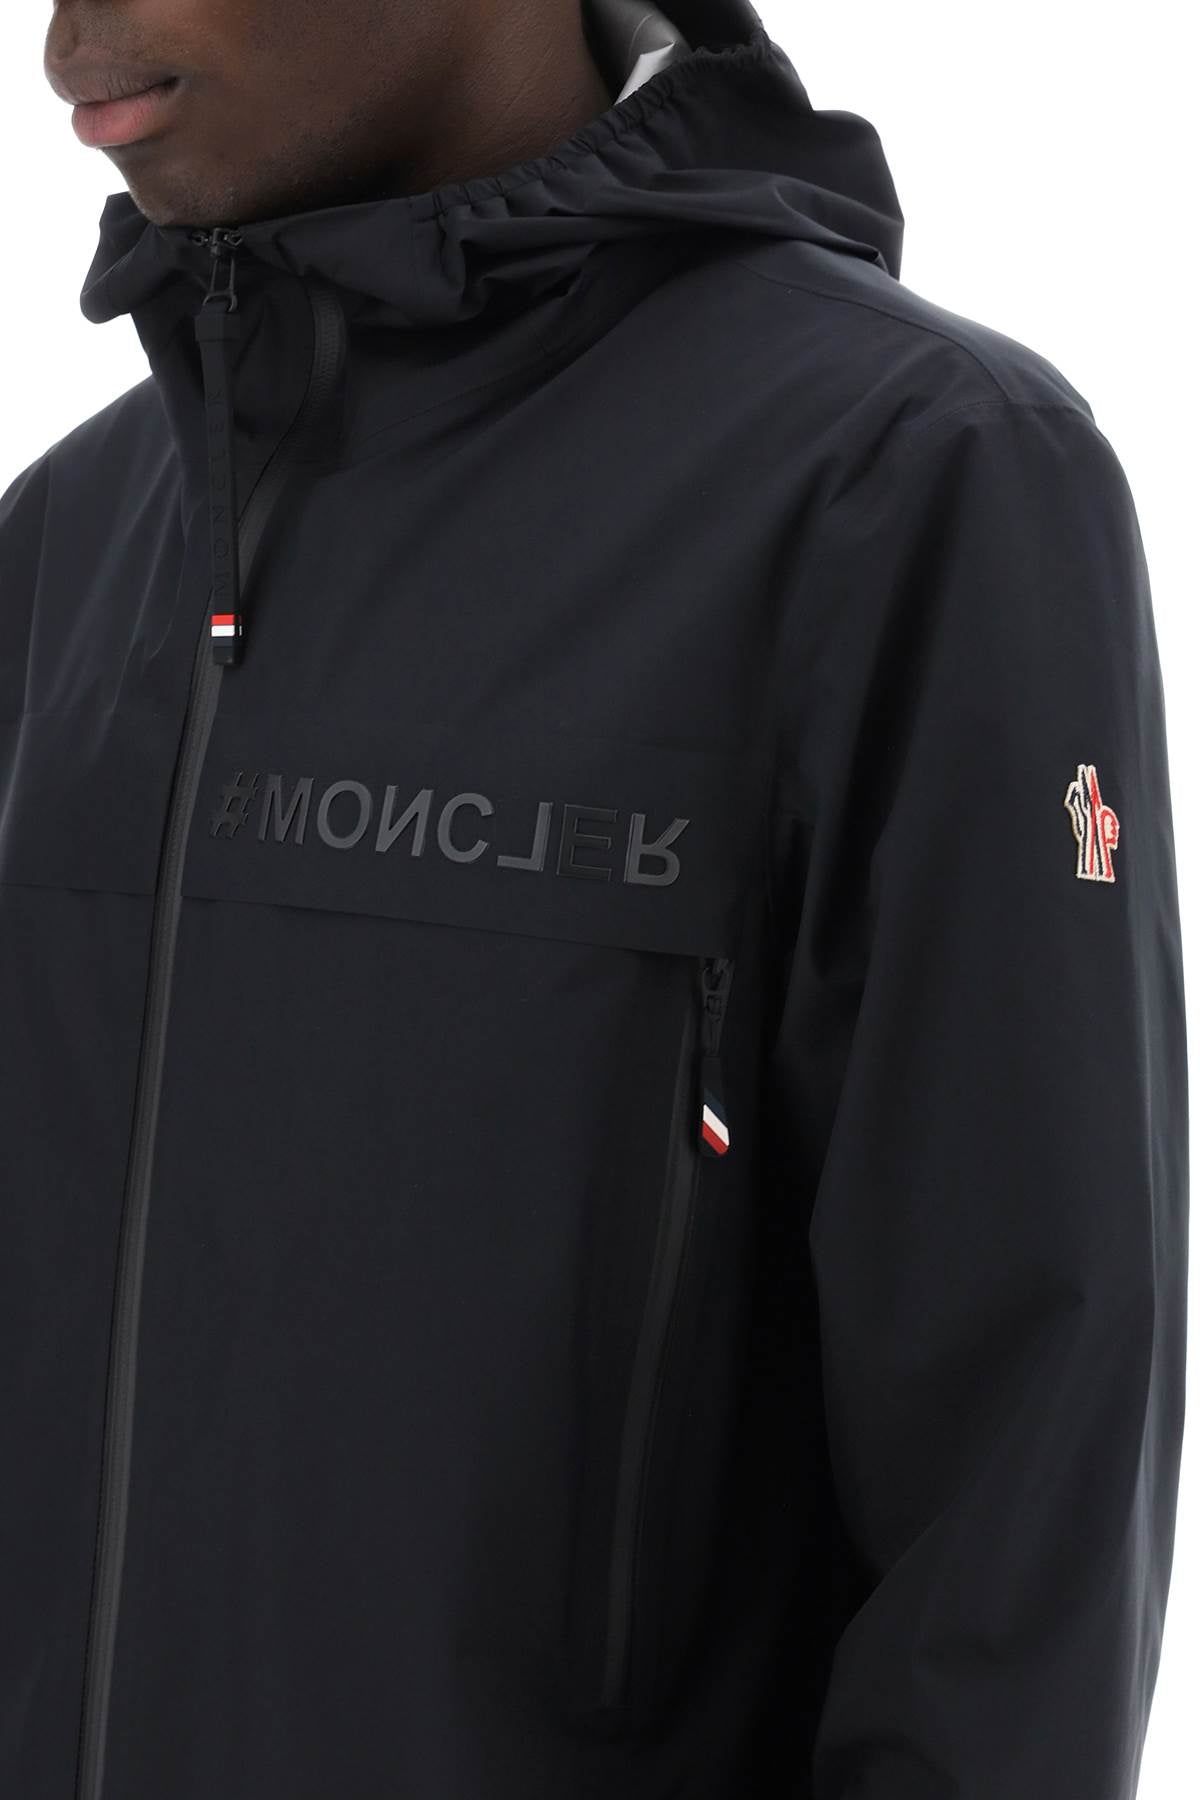 Moncler Grenoble MONCLER GRENOBLE Jacket blue 1A0001254AL5999